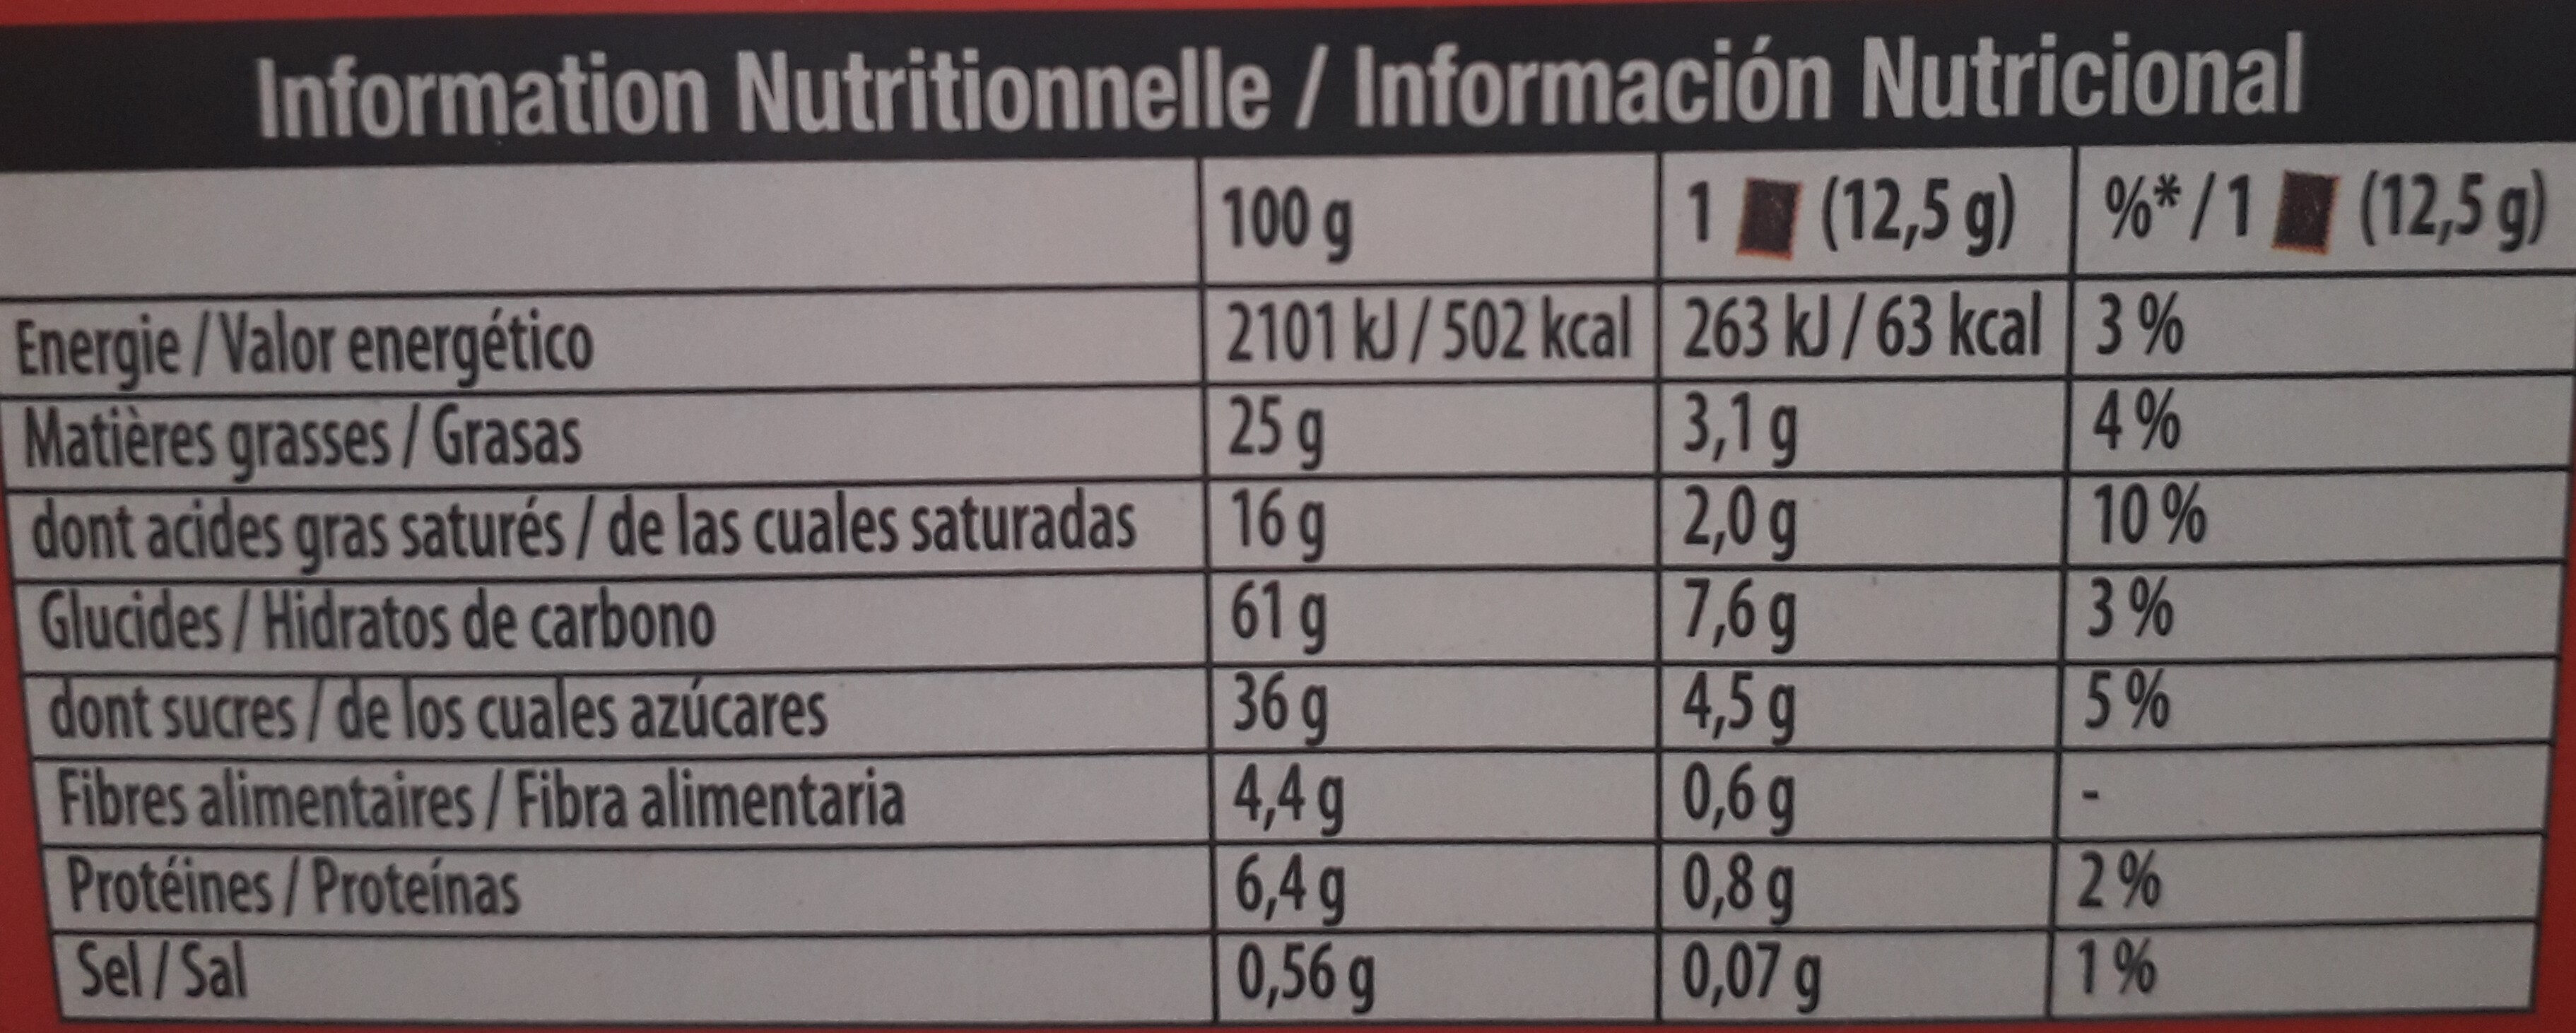 Petit écolier chocolat noir - Informació nutricional - fr